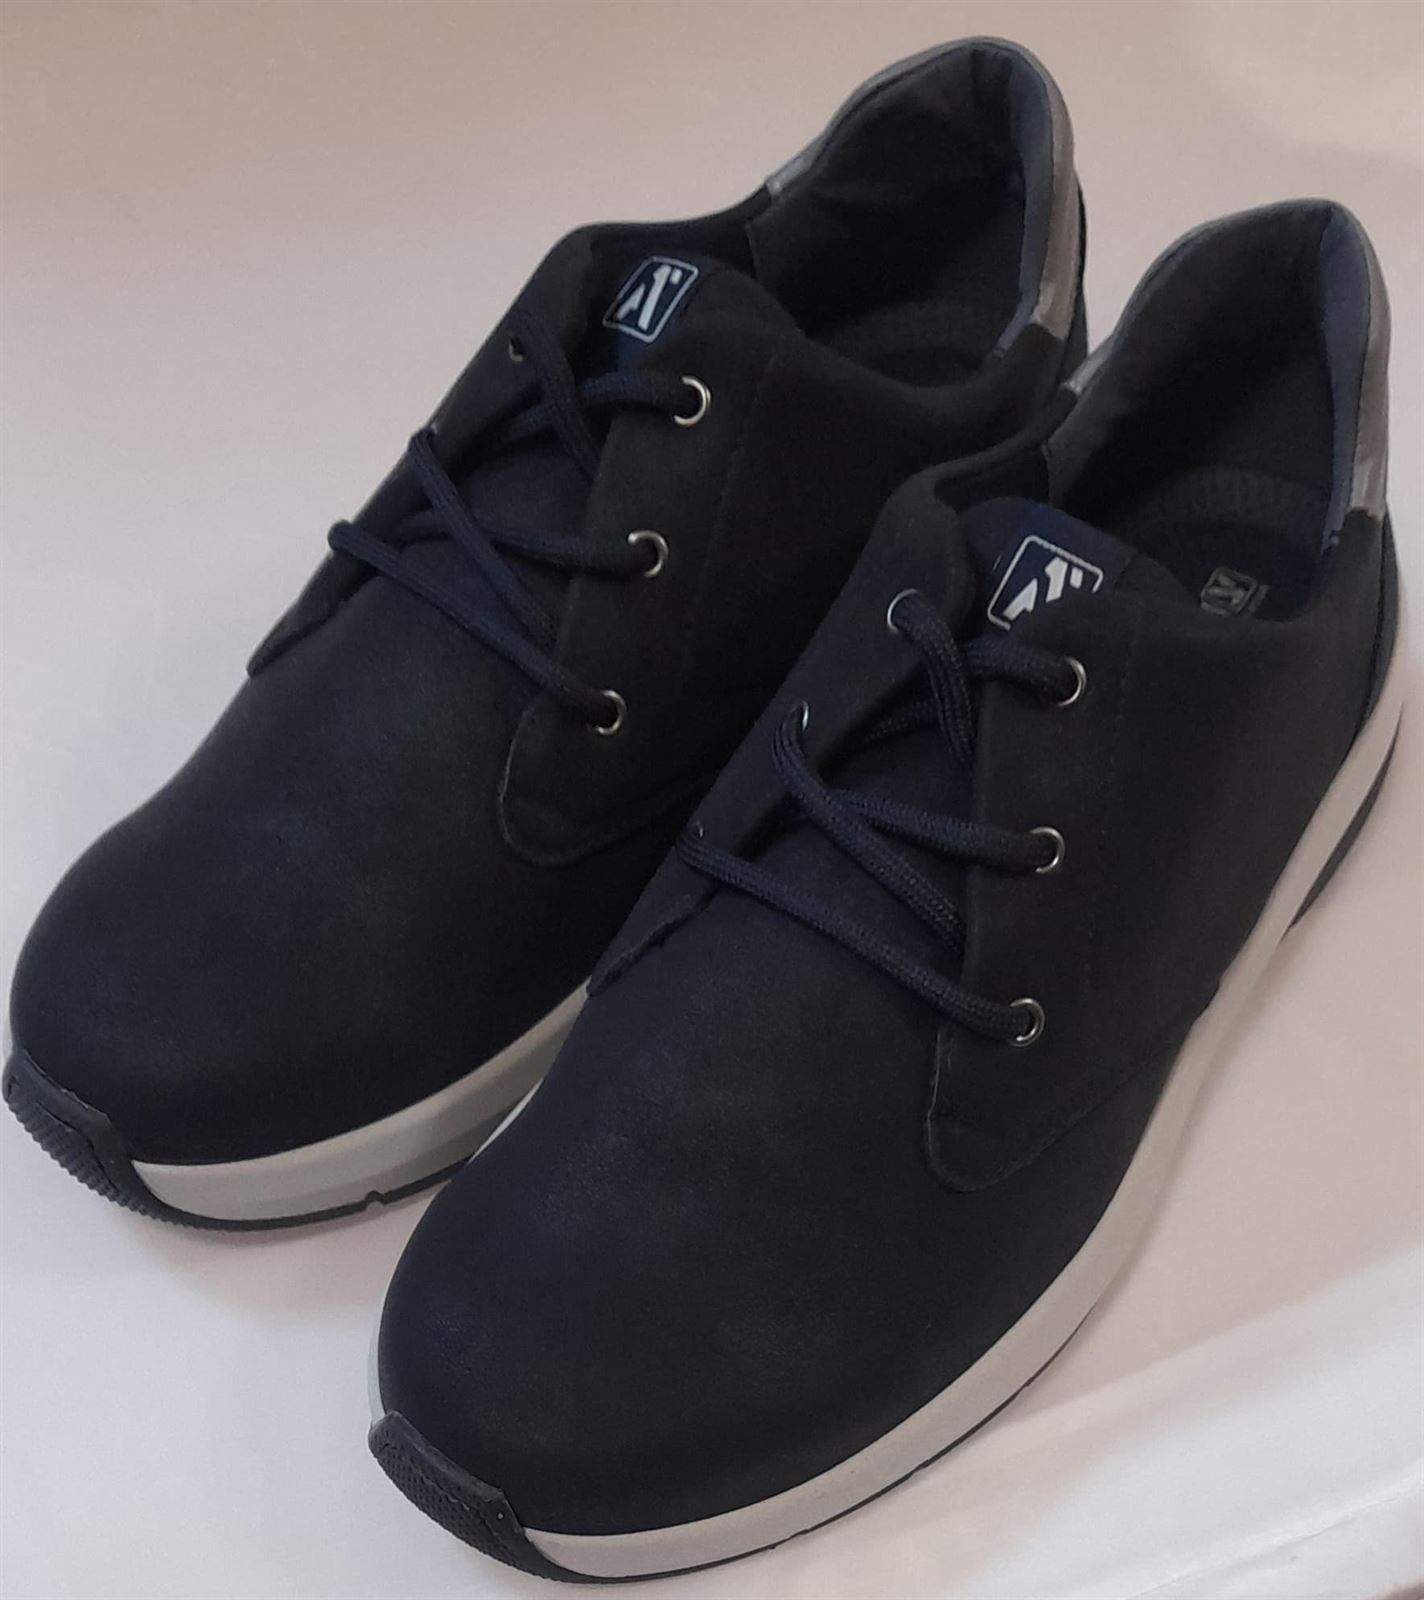 Zapato Stone azul - Imagen 1